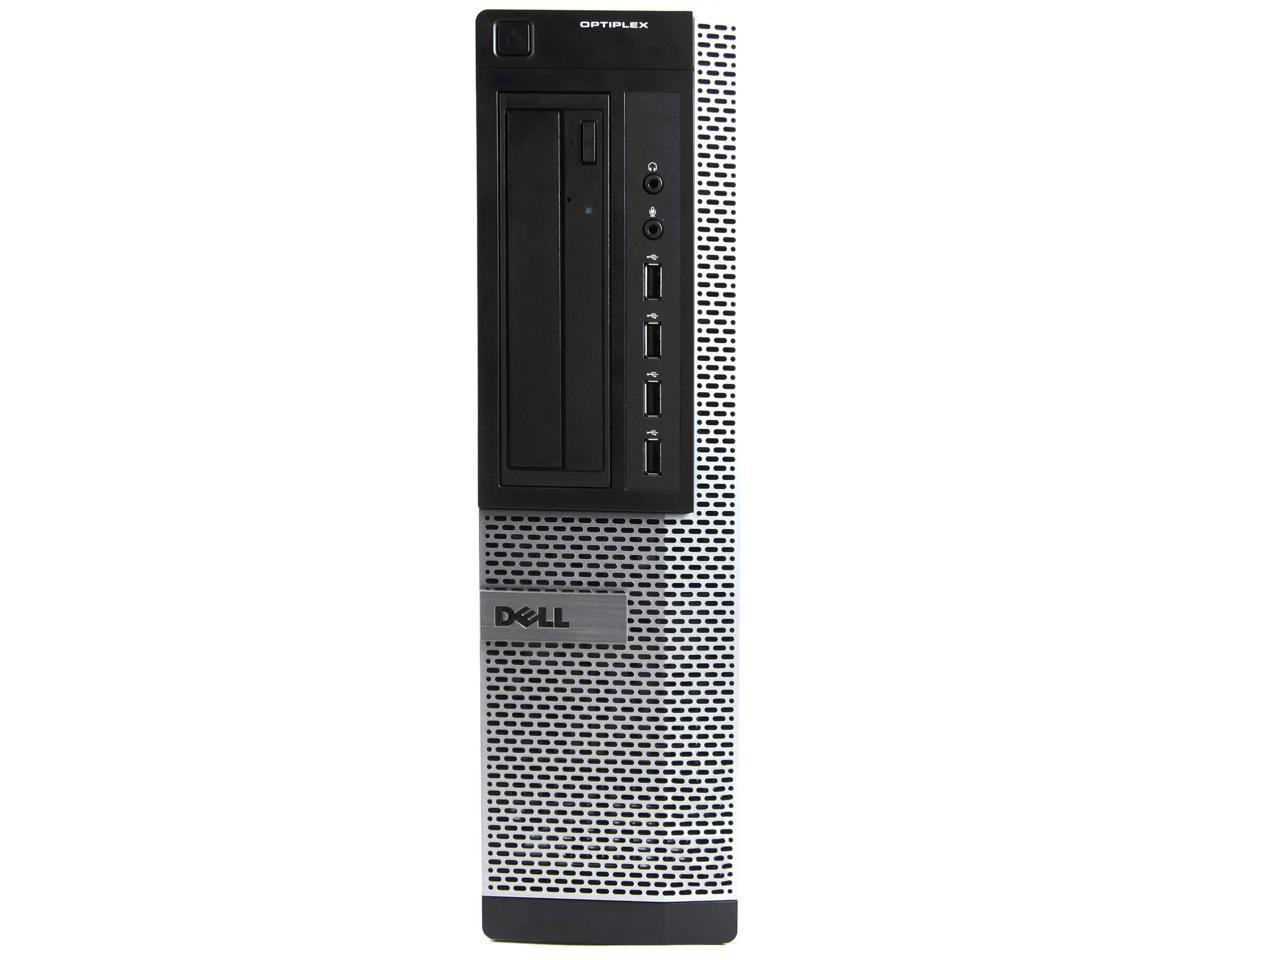 Refurbished: Dell OptiPlex 7010 PC Desktop Computer, Intel Core i5 3rd